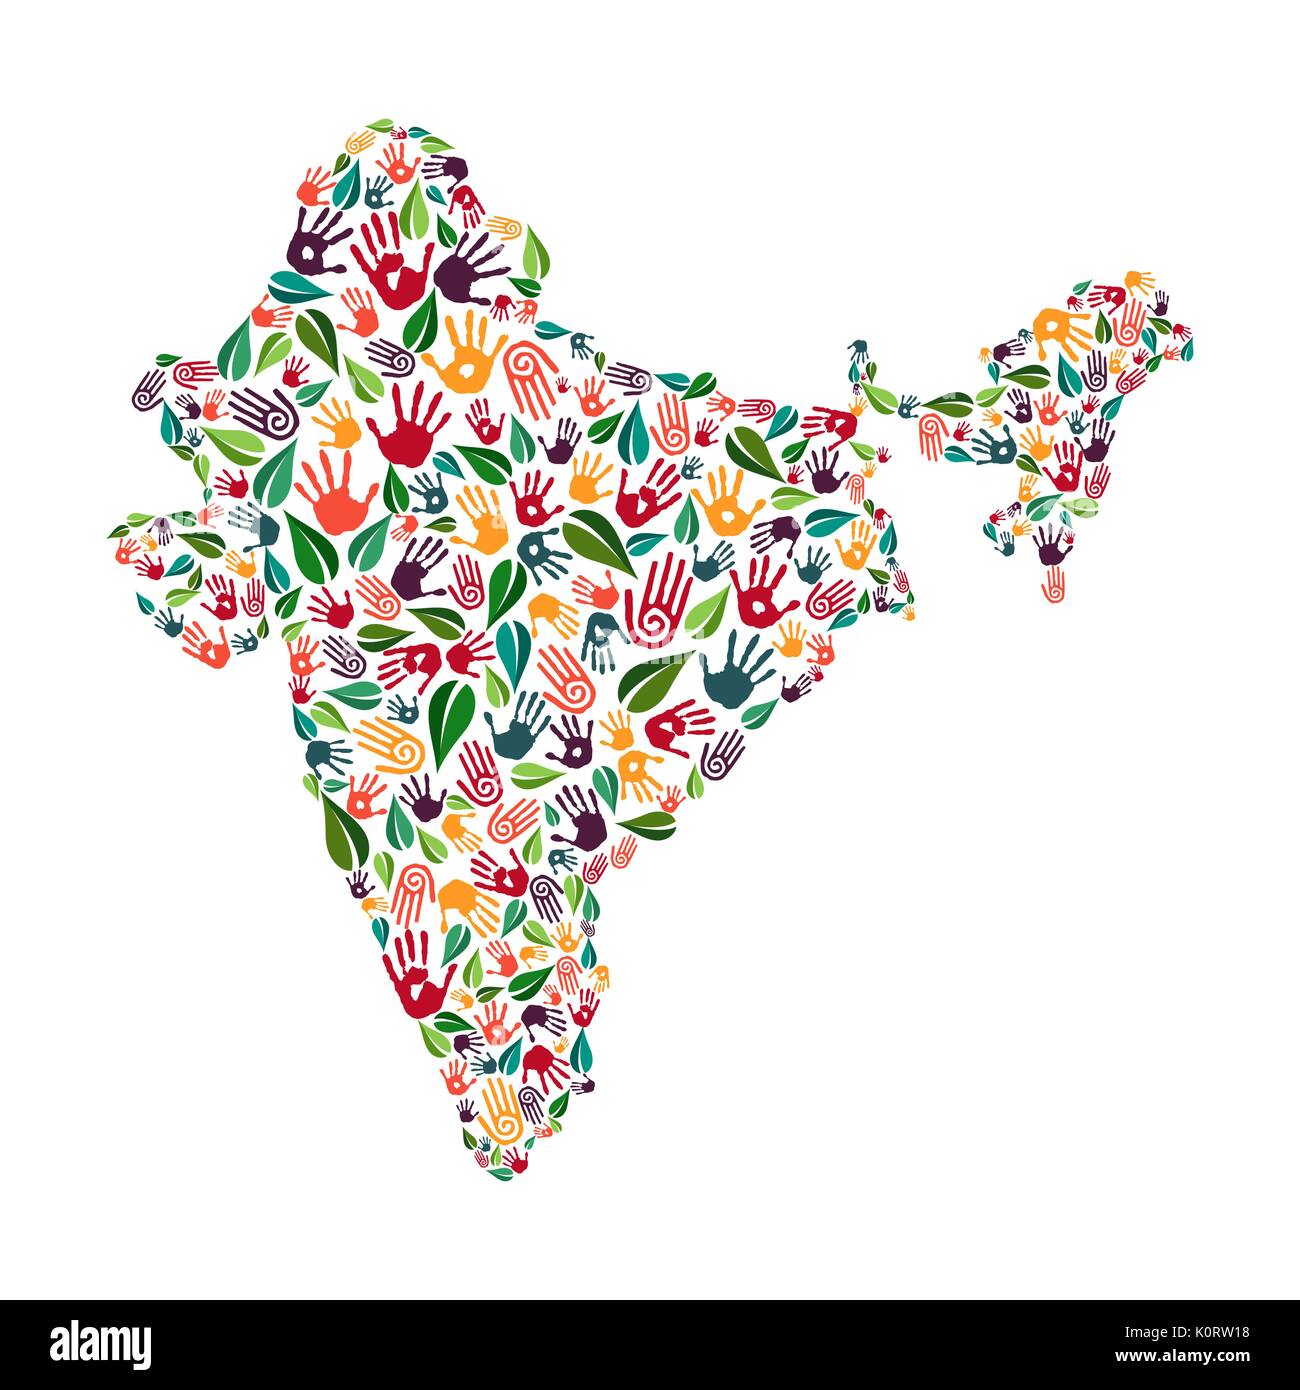 Indische land Form mit grünen Blättern und die menschliche Hand gedruckt. Indien Welt Hilfe Konzept Abbildung für Wohltätigkeit, Natur- oder sozialen Projekt. E Stock Vektor